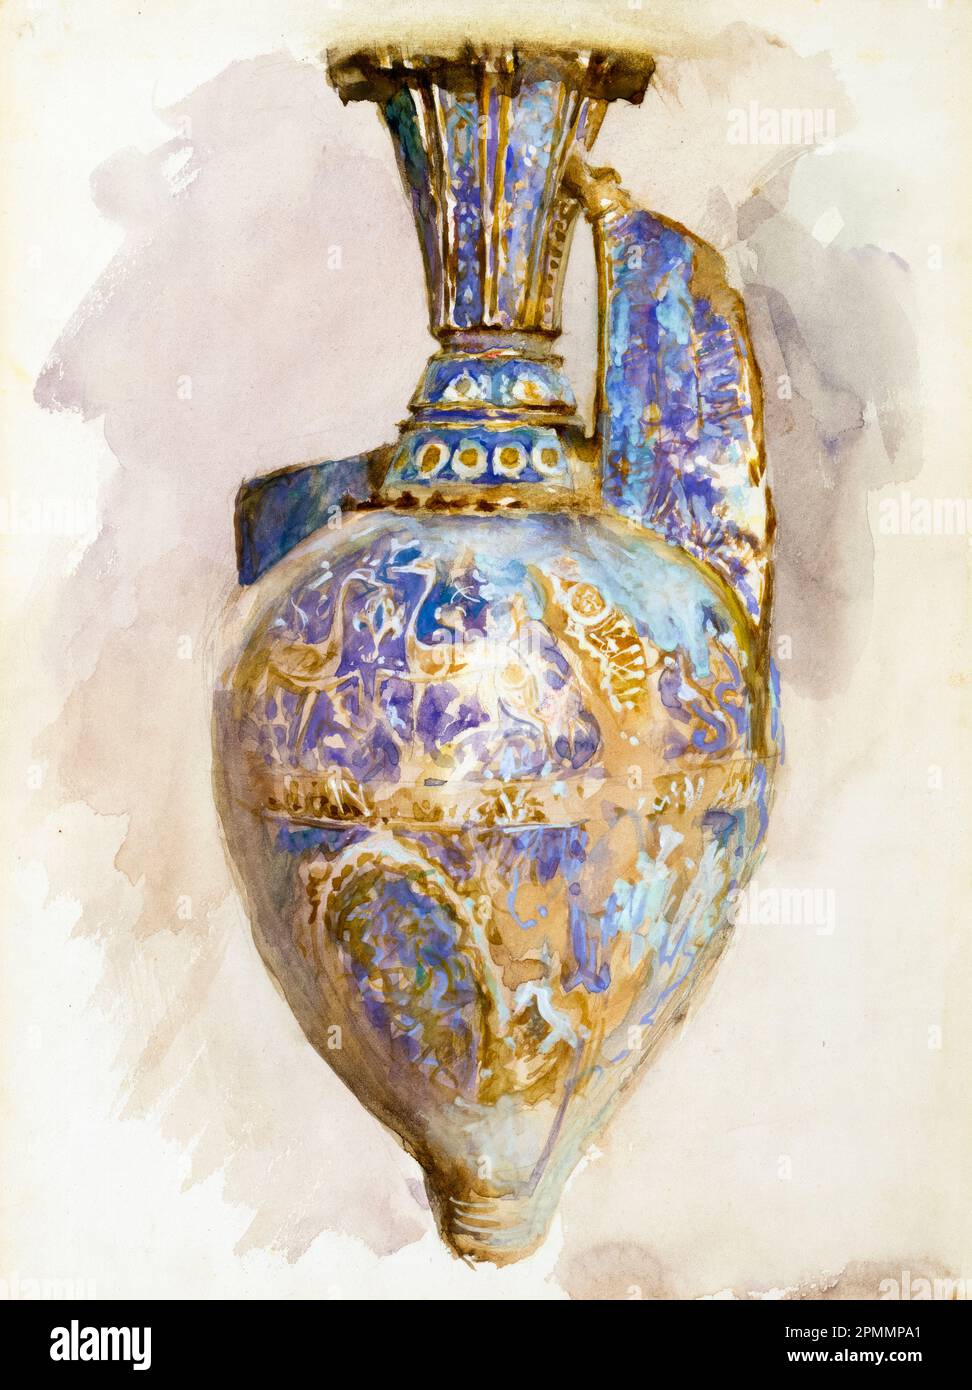 John Singer Sargent, le vase de l'Alhambra, aquarelle encore la peinture de la vie, vers 1879 Banque D'Images